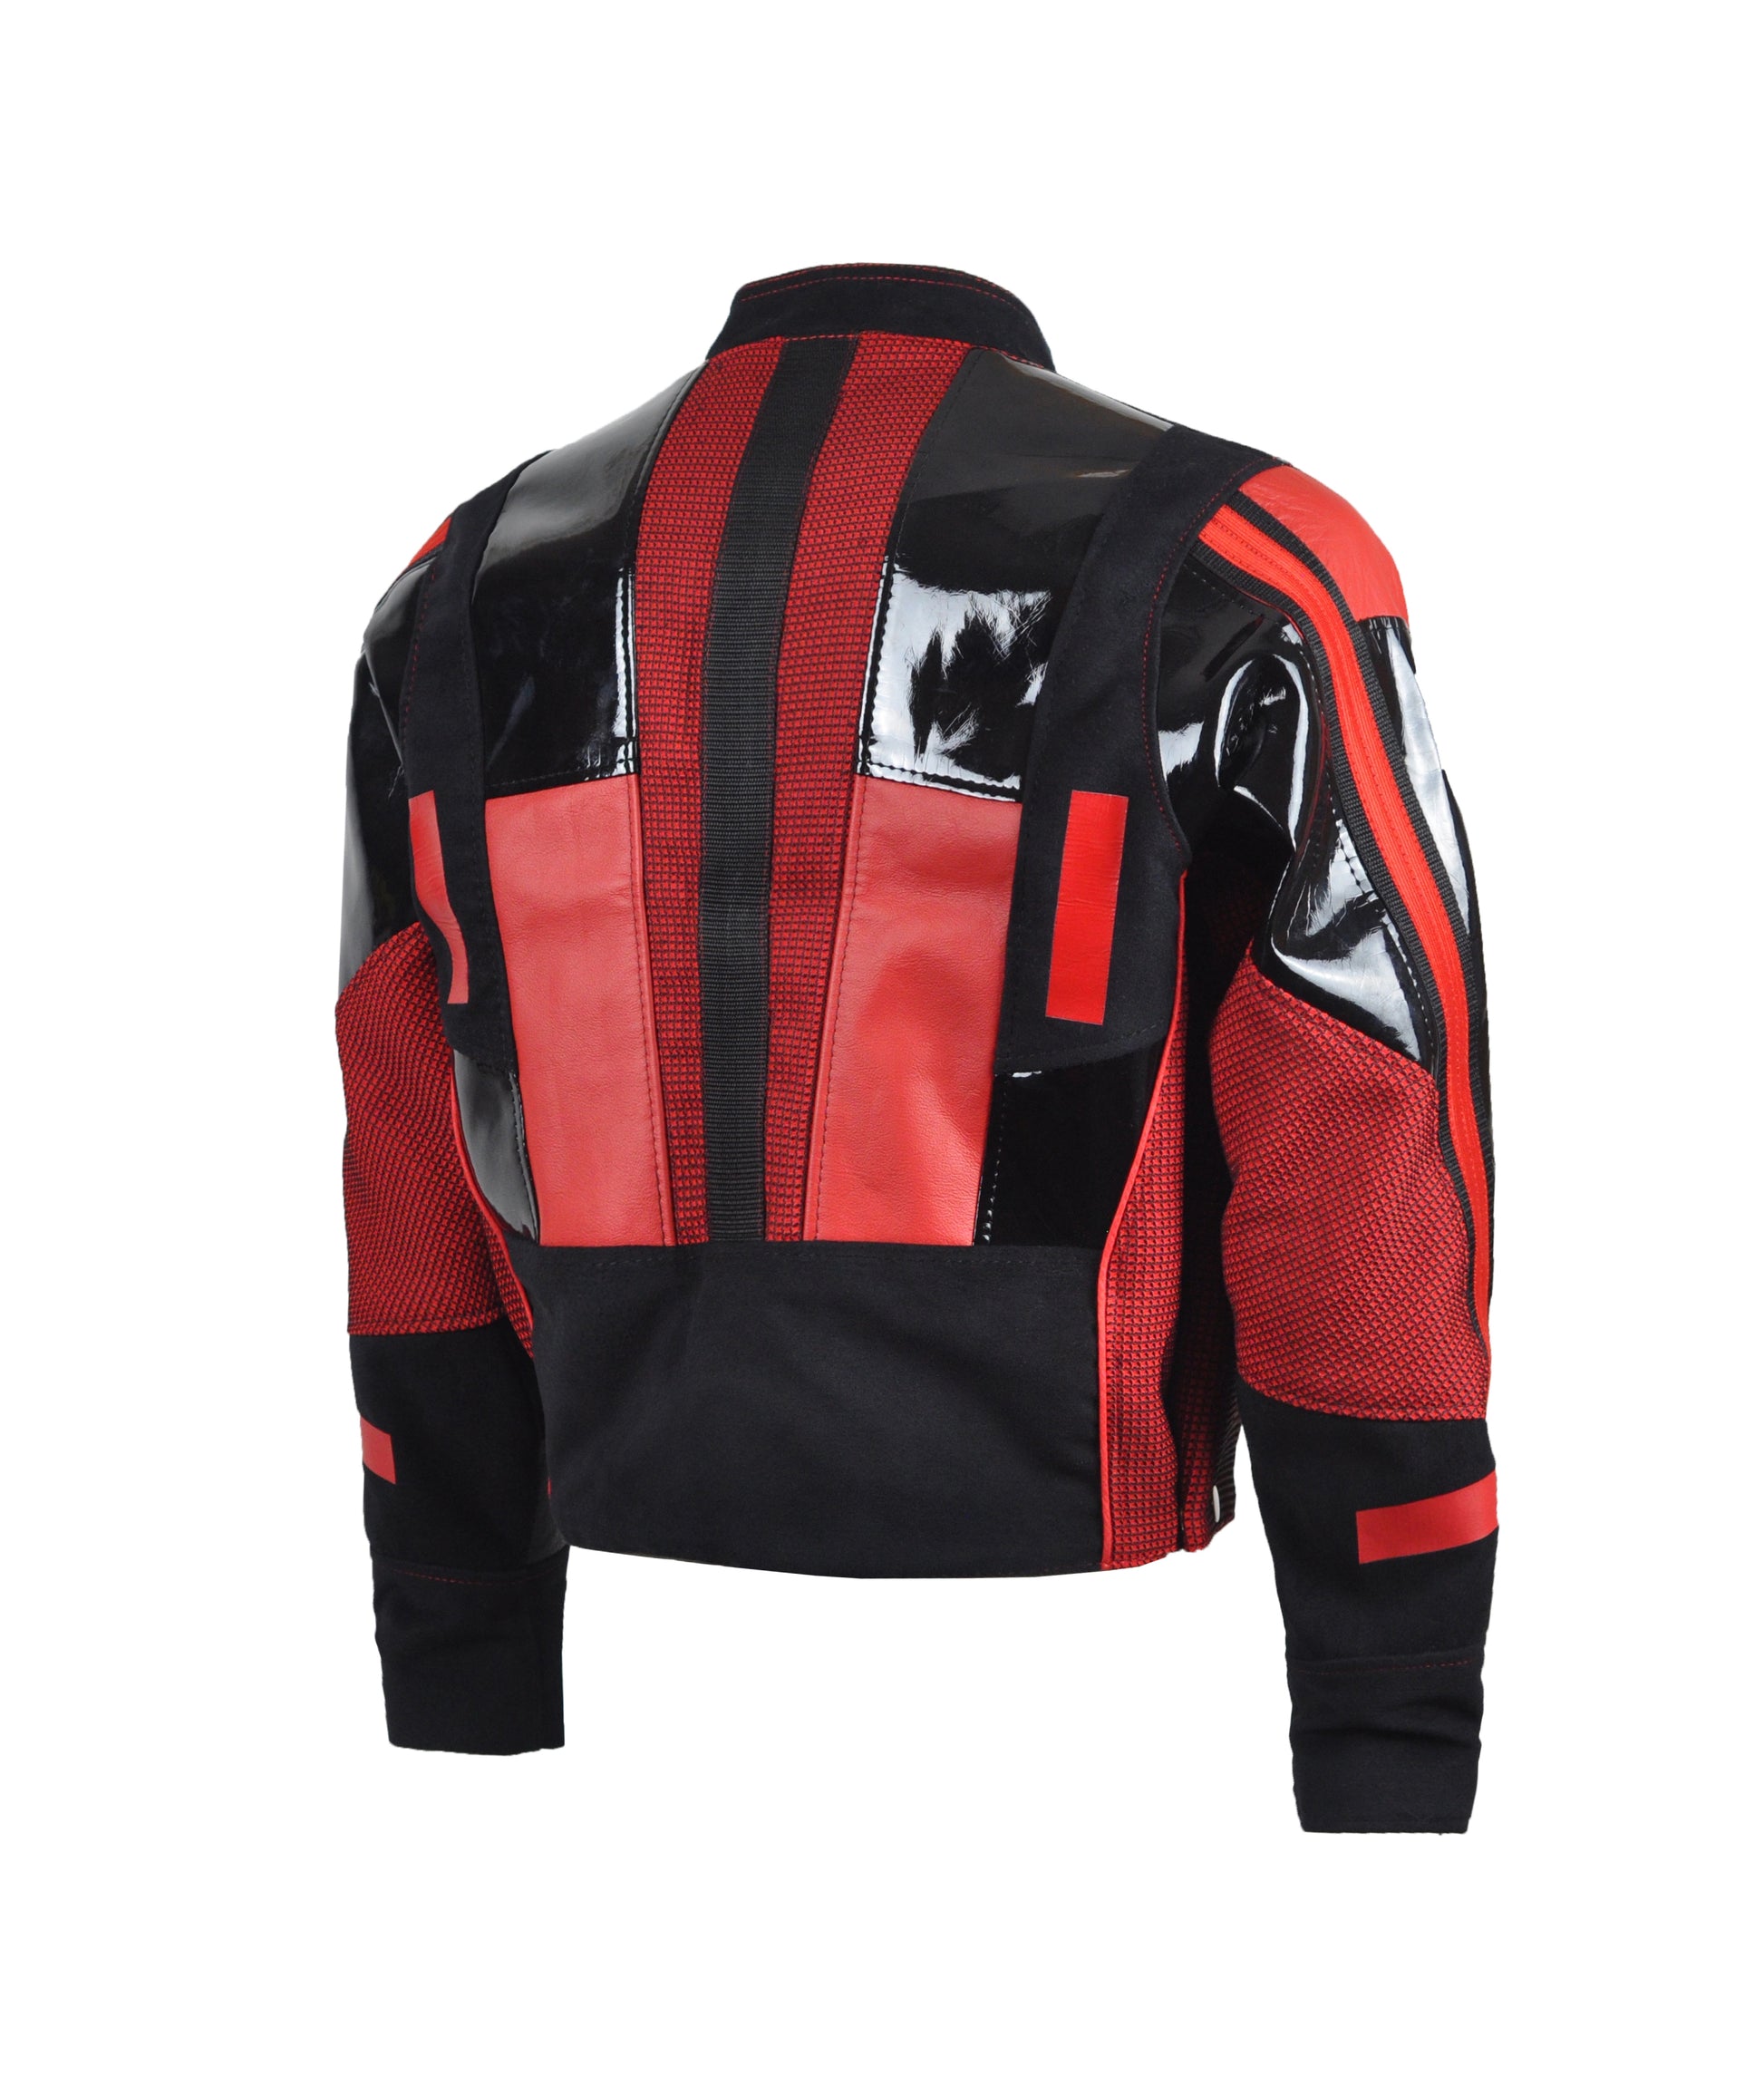 achterkant van zwart rode jas met lak stukken, techno outfit